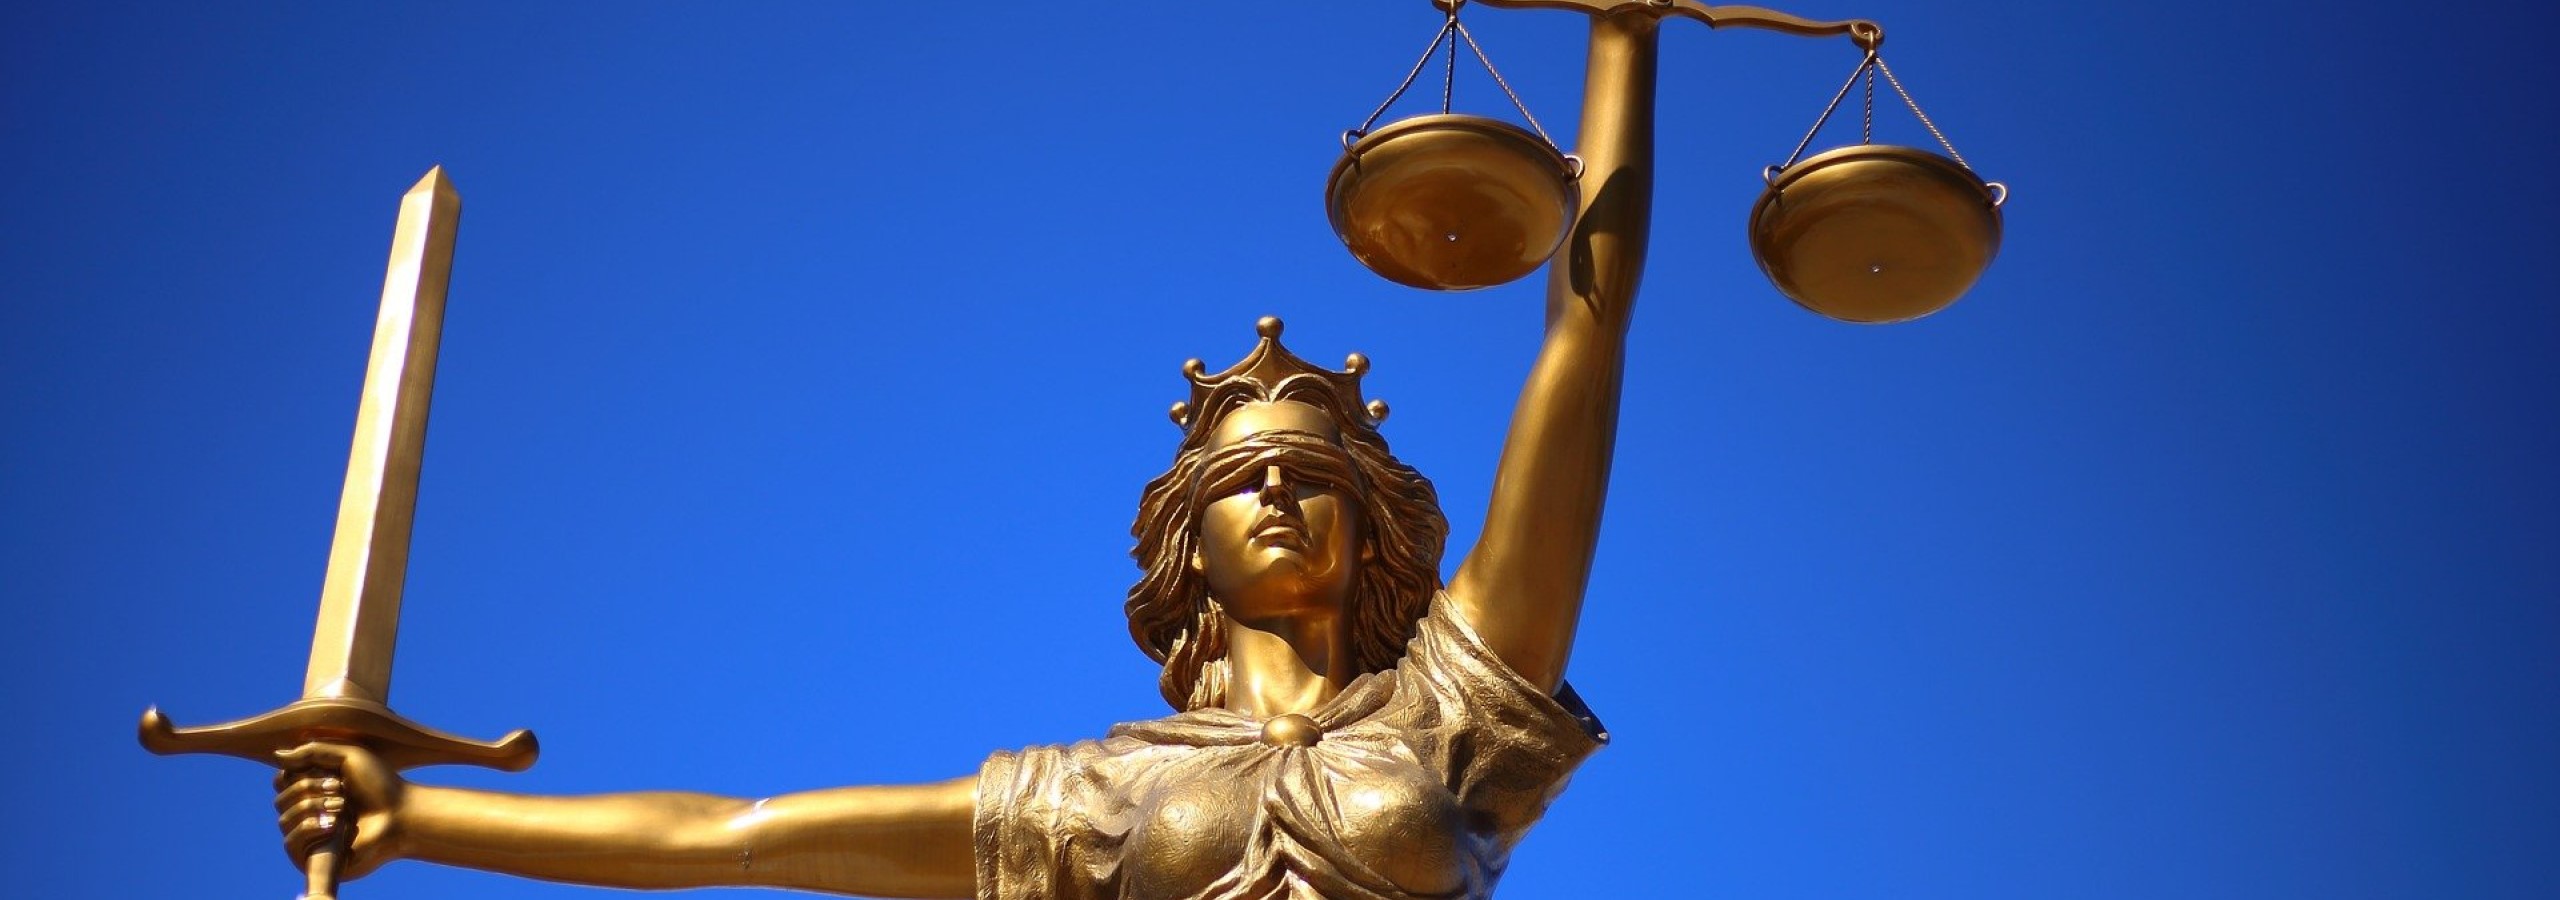 Ortsgericht Tann - Panoramaschnitt des Bildes einer "Justizia"-Statue vor blauem Himmel